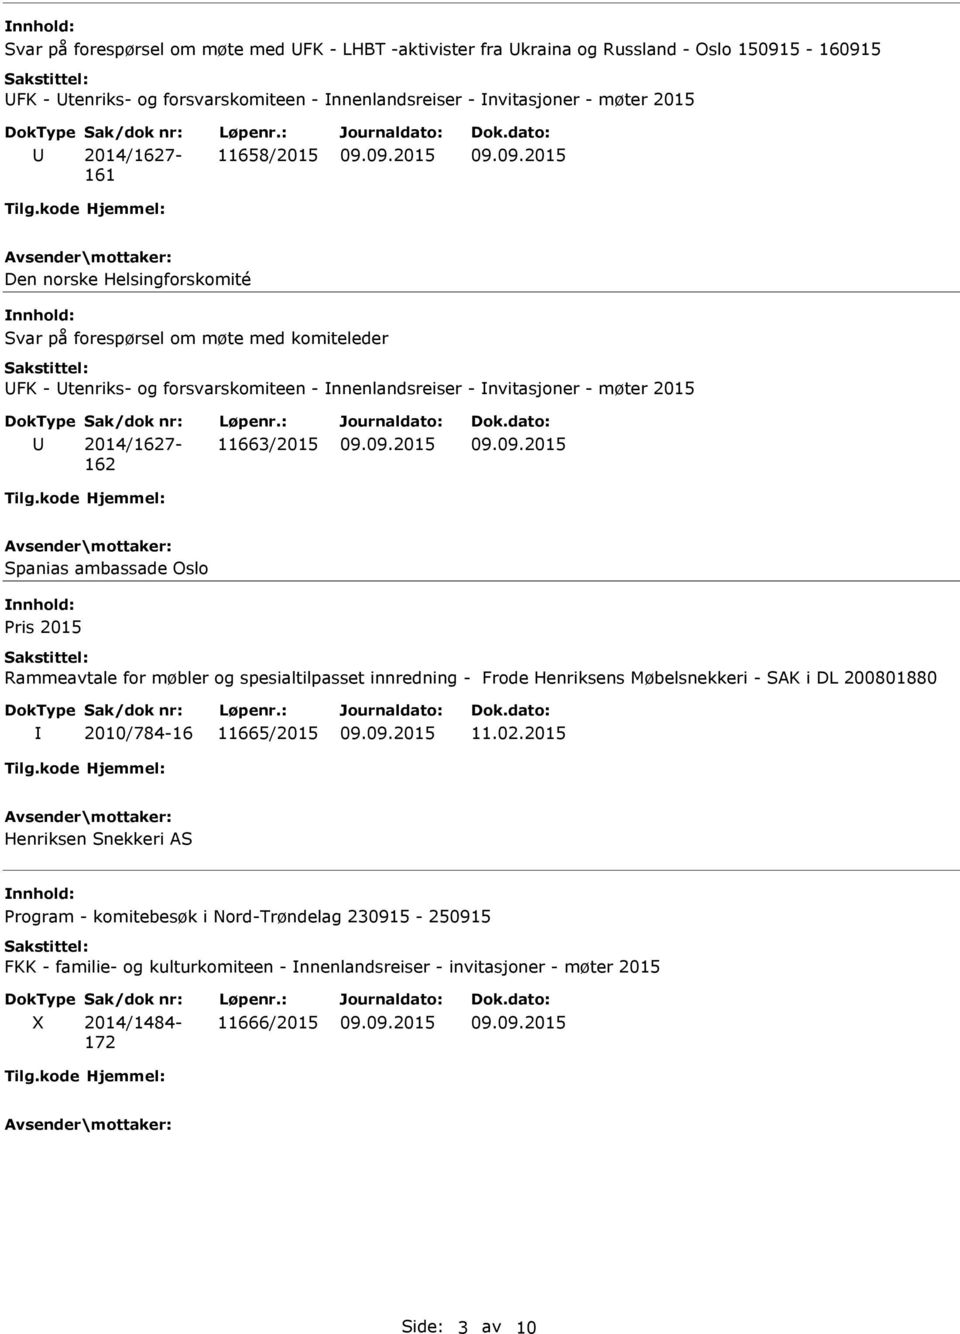 2014/1627-162 11663/2015 Spanias ambassade Oslo Pris 2015 Rammeavtale for møbler og spesialtilpasset innredning - Frode Henriksens Møbelsnekkeri - SAK i DL 200801880 2010/784-16 11665/2015